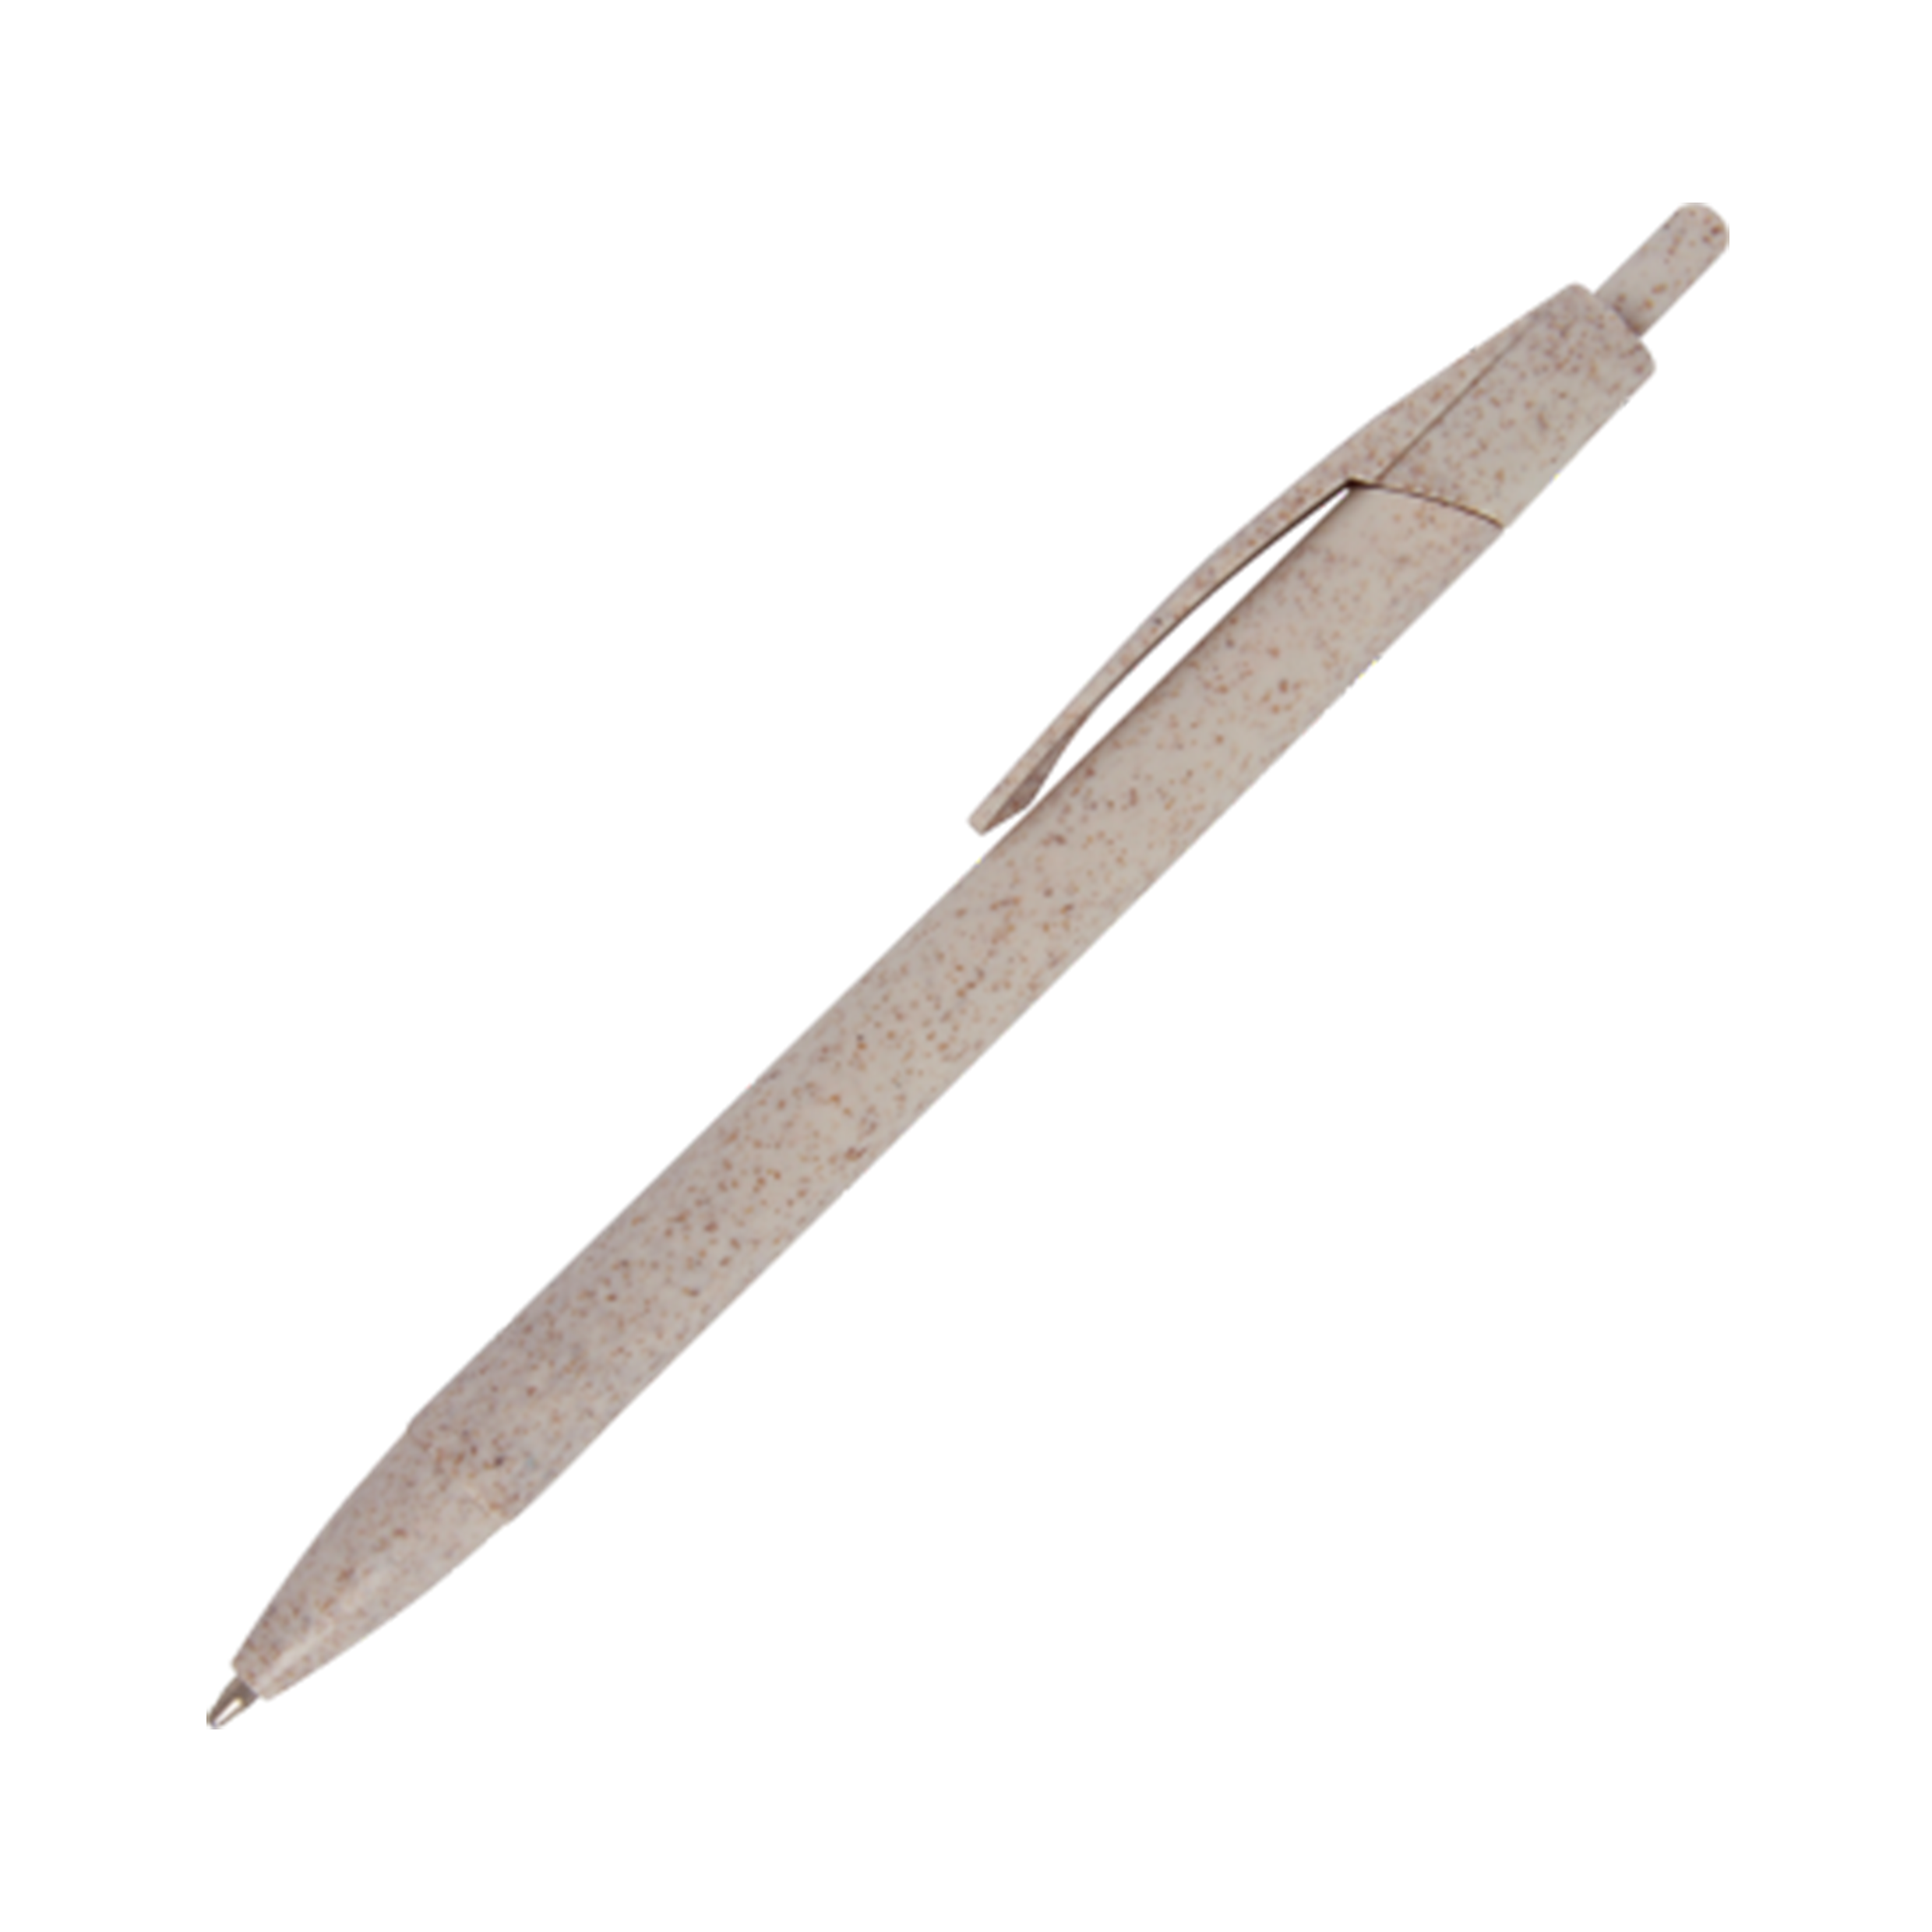 CABALLO Ballpoint Pen made of Wheat Straw - Rothley